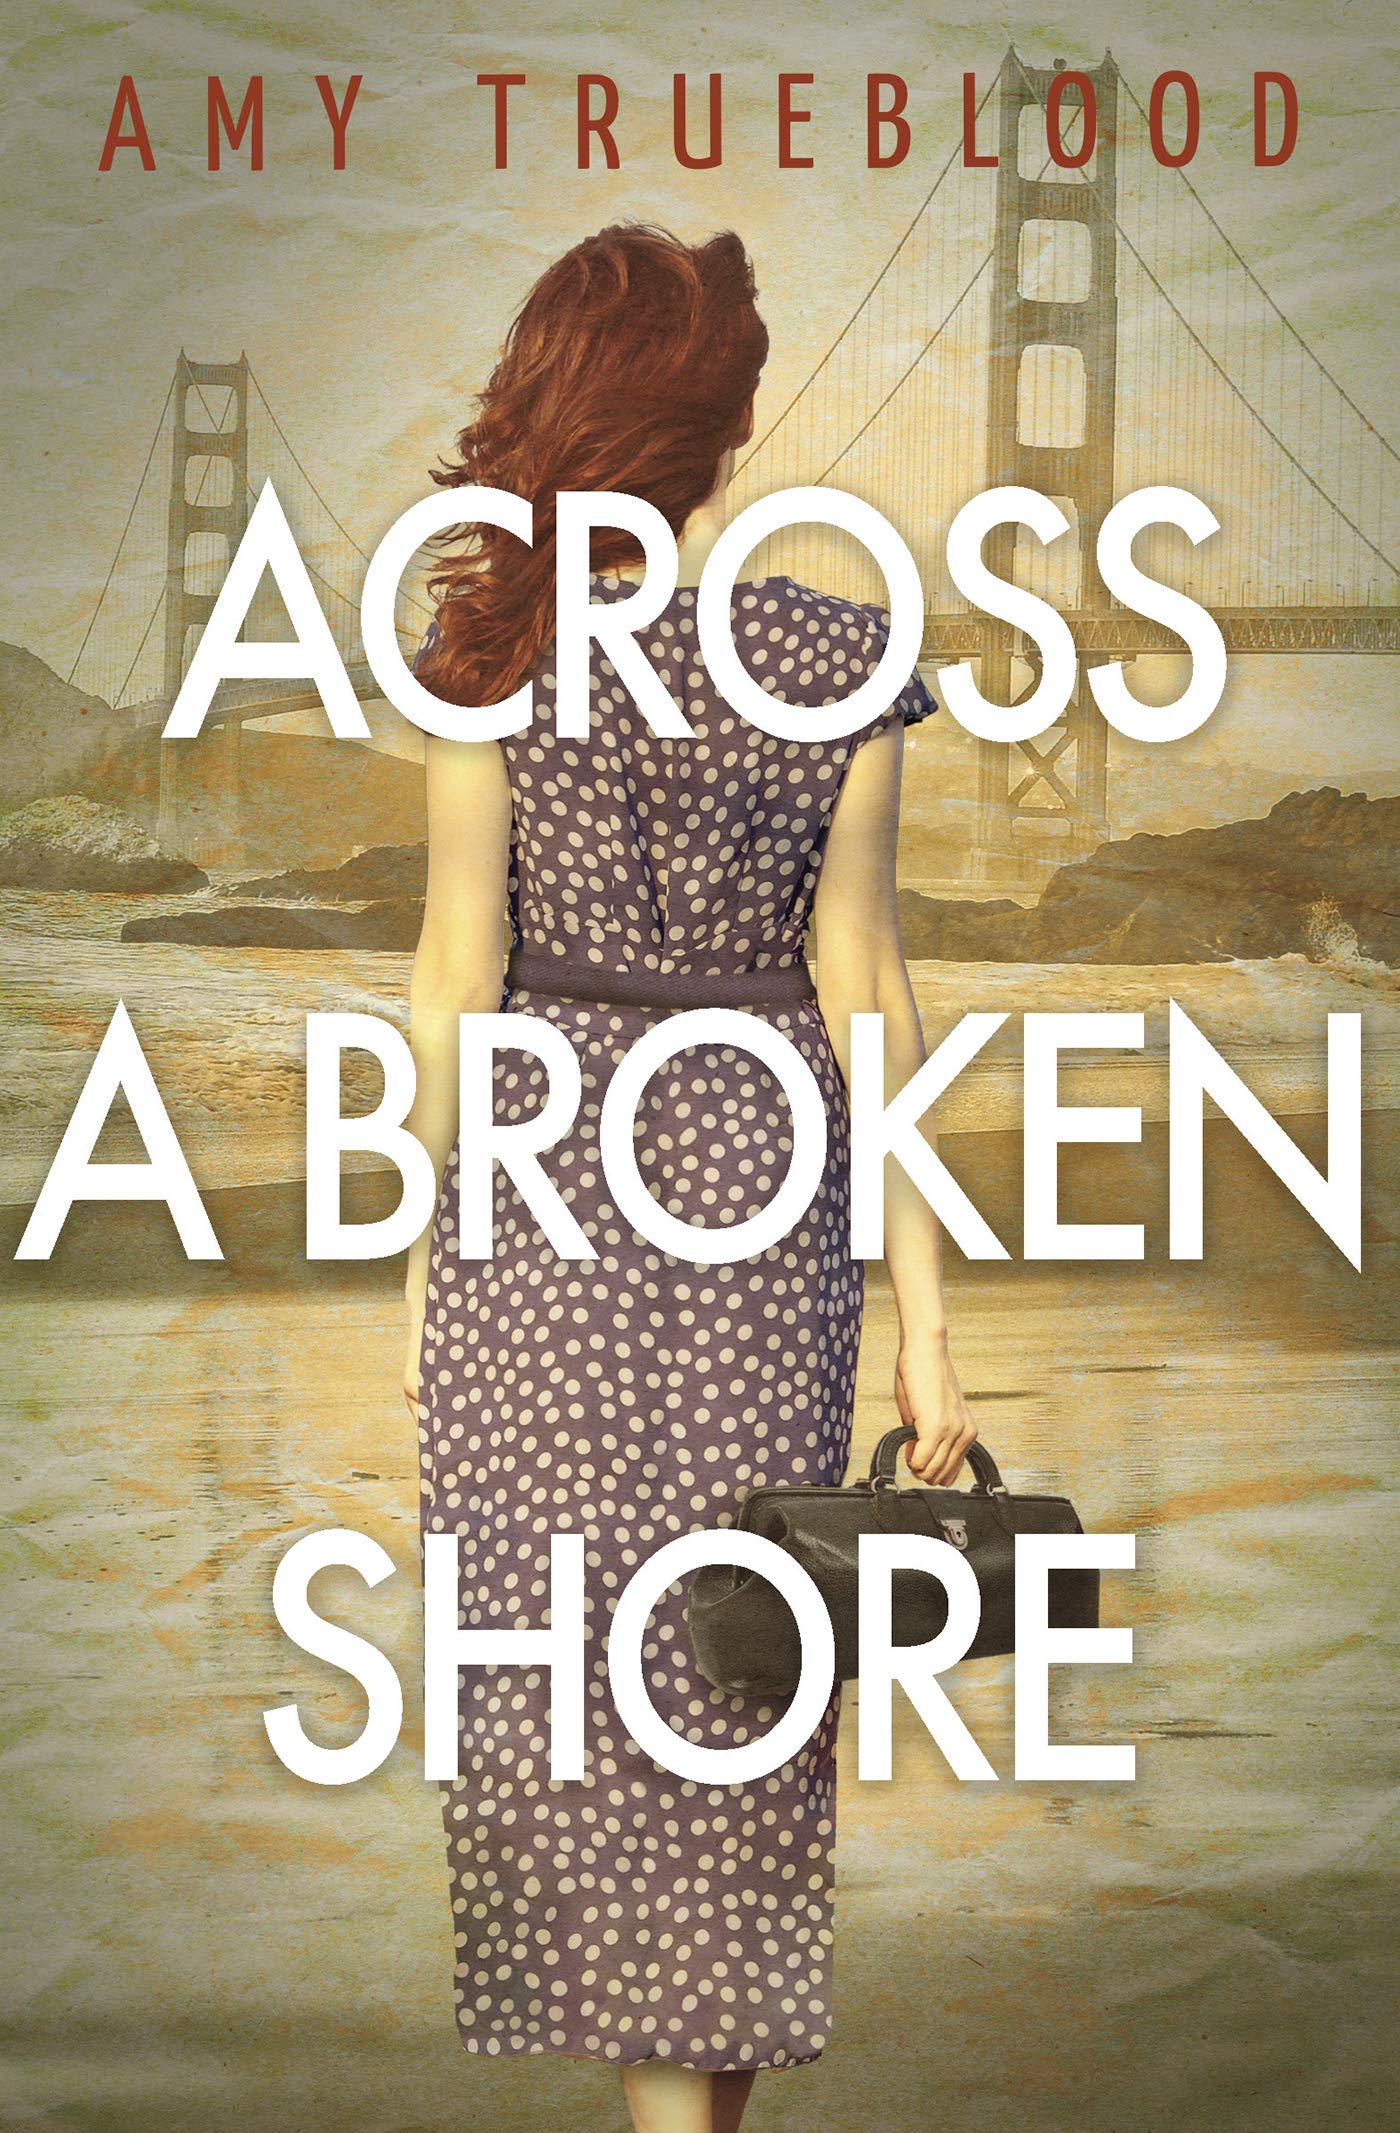 Across a Broken Shore